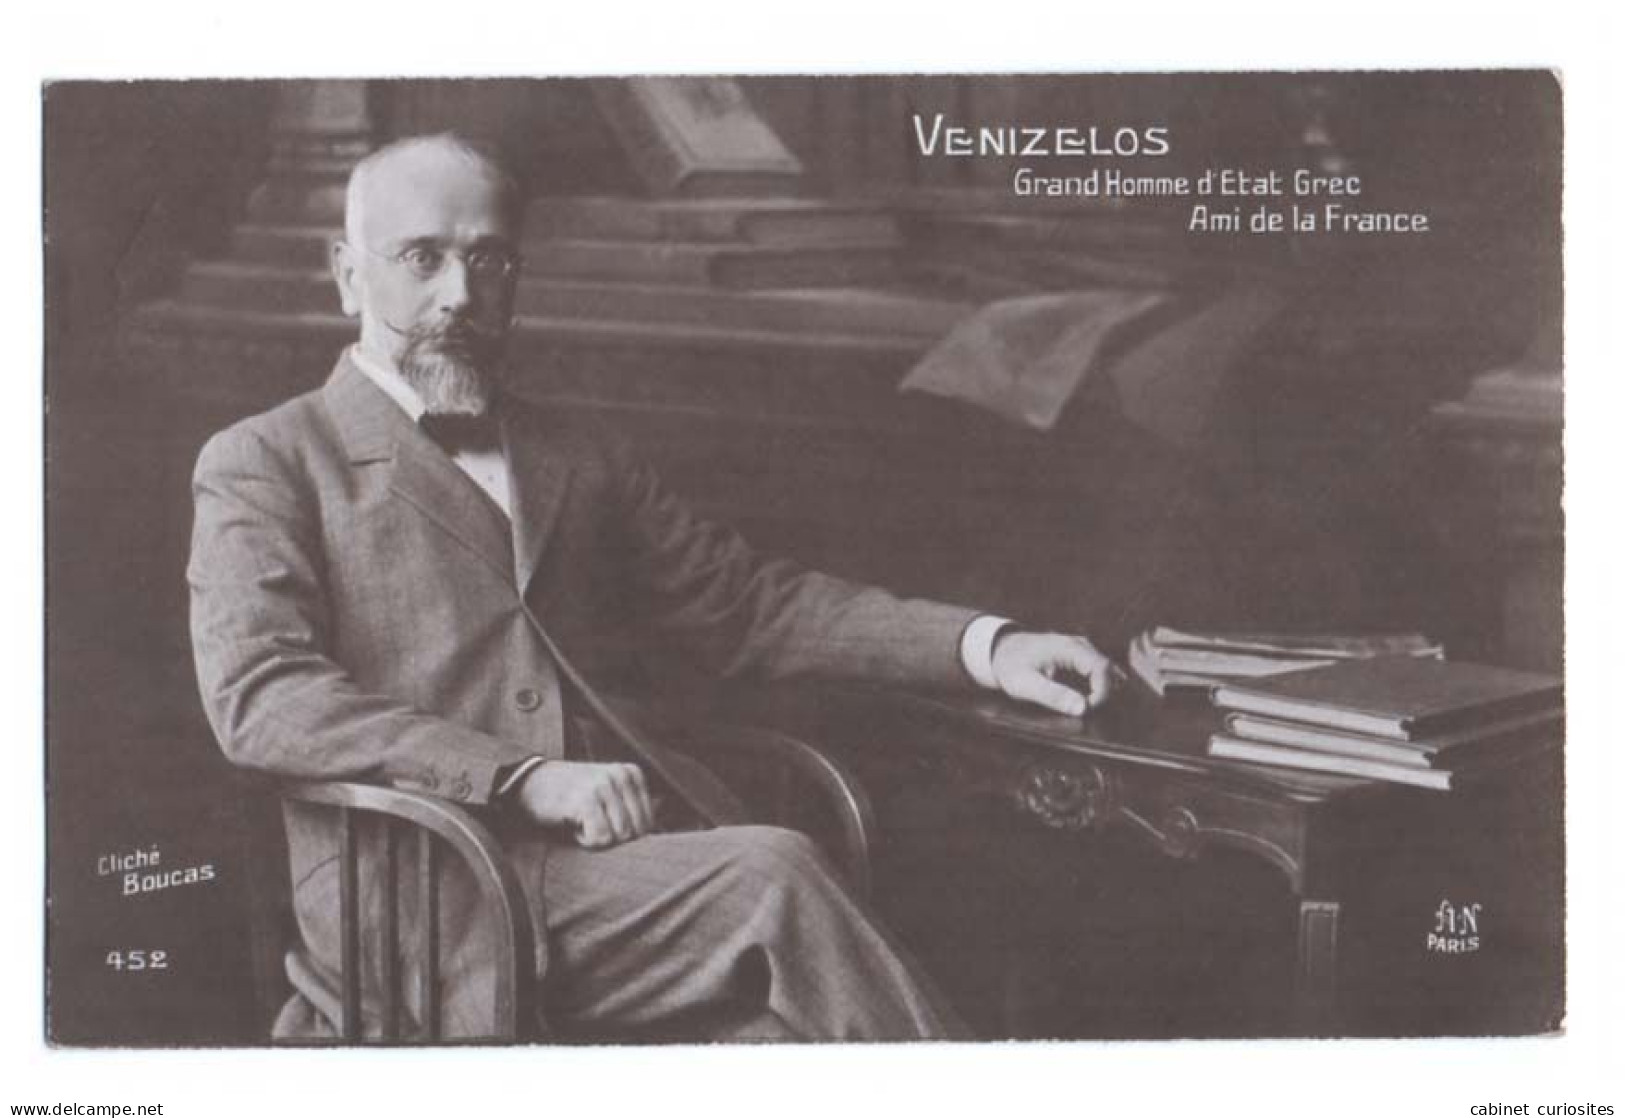 VENIZELOS - Grand Homme D'Etat Grec - Ami De La France - Cliché Boucas - Beau Portrait - Premier Ministre De Grèce 1910 - War 1914-18